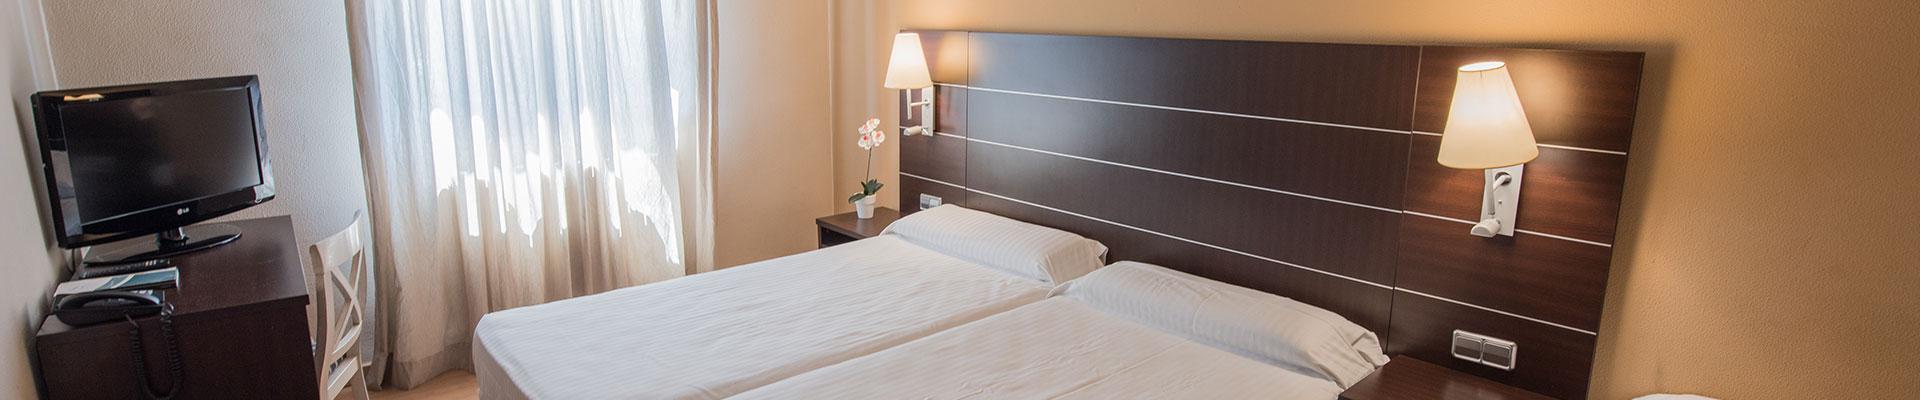 Hotel in Utebo | Zaragoza: The Rooms